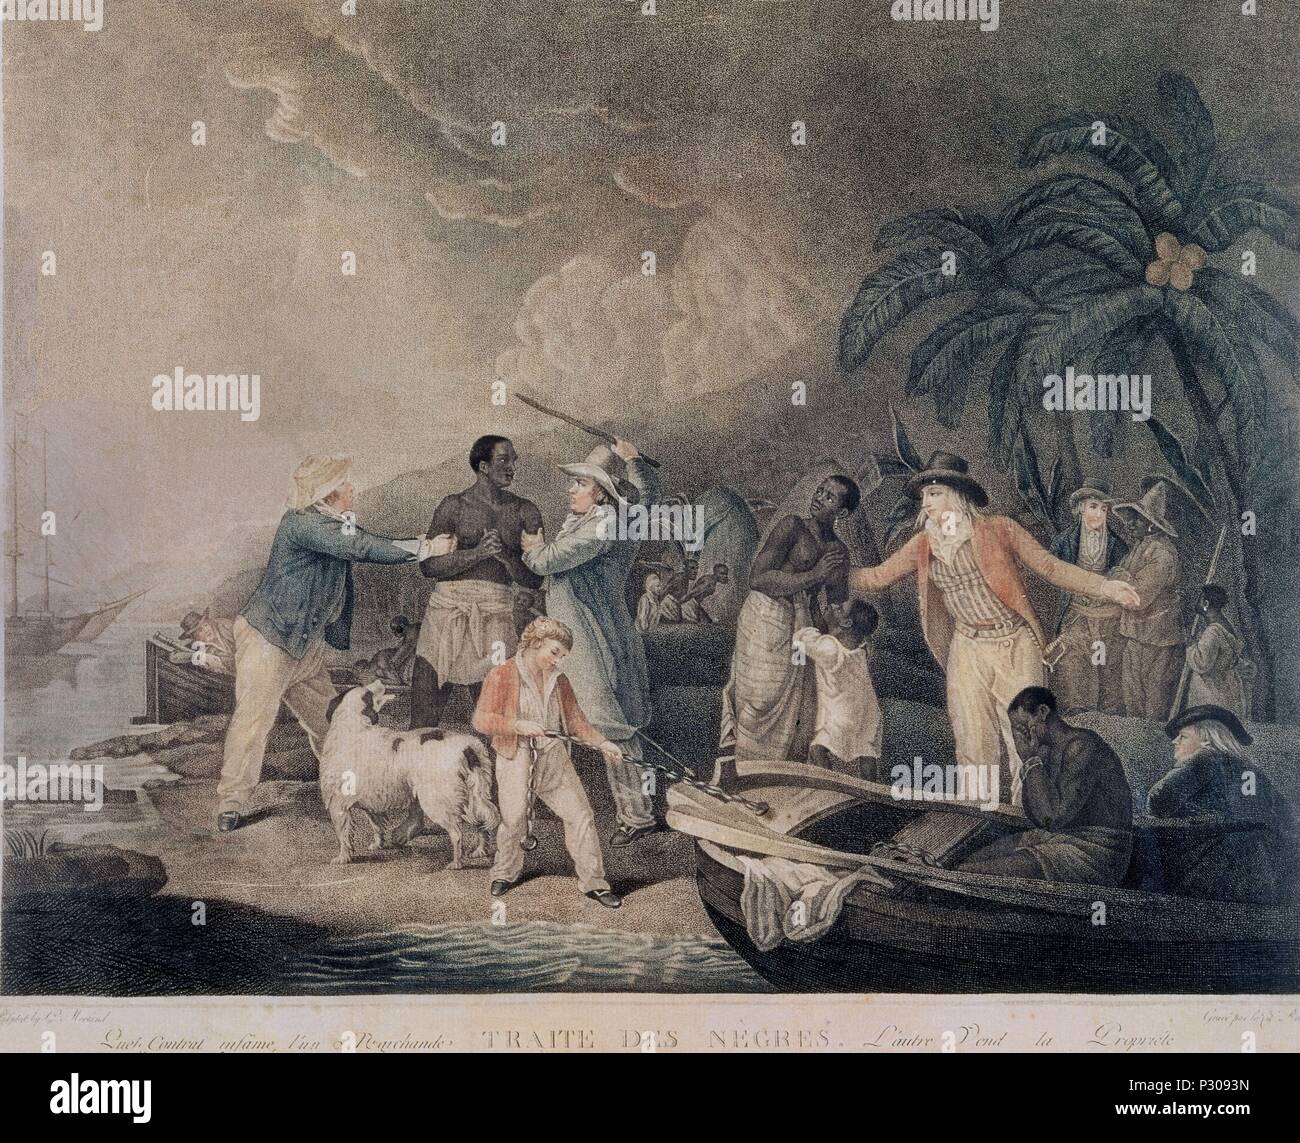 Der Sklavenhandel - 1835 - farbige Gravur. Autor: George Morland (1763-1804). Auch als: TRATA DE NEGROS bekannt. Stockfoto